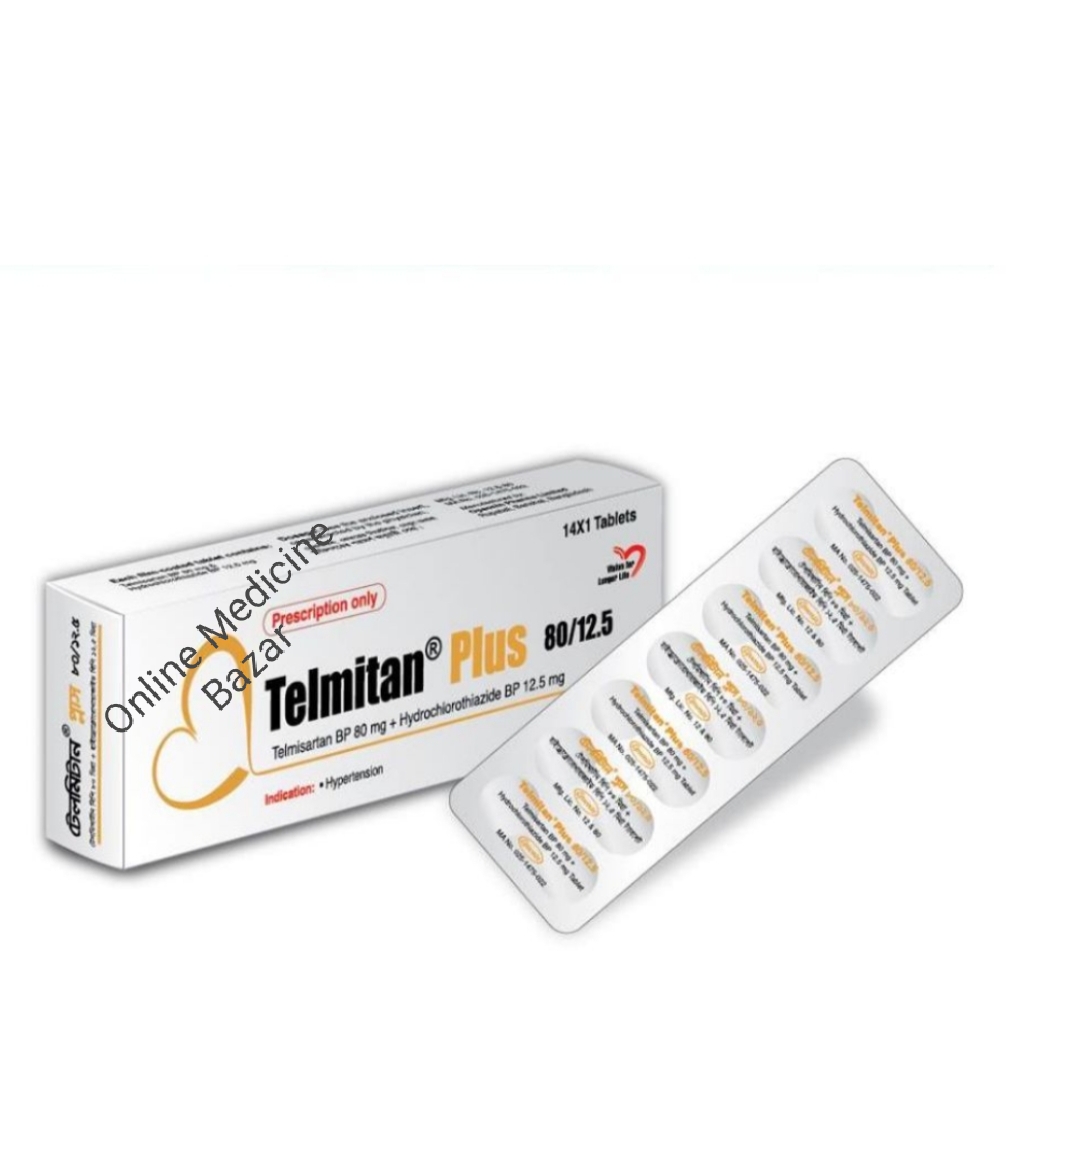 Telmitan Plus 80 mg Tablet-14's Pack